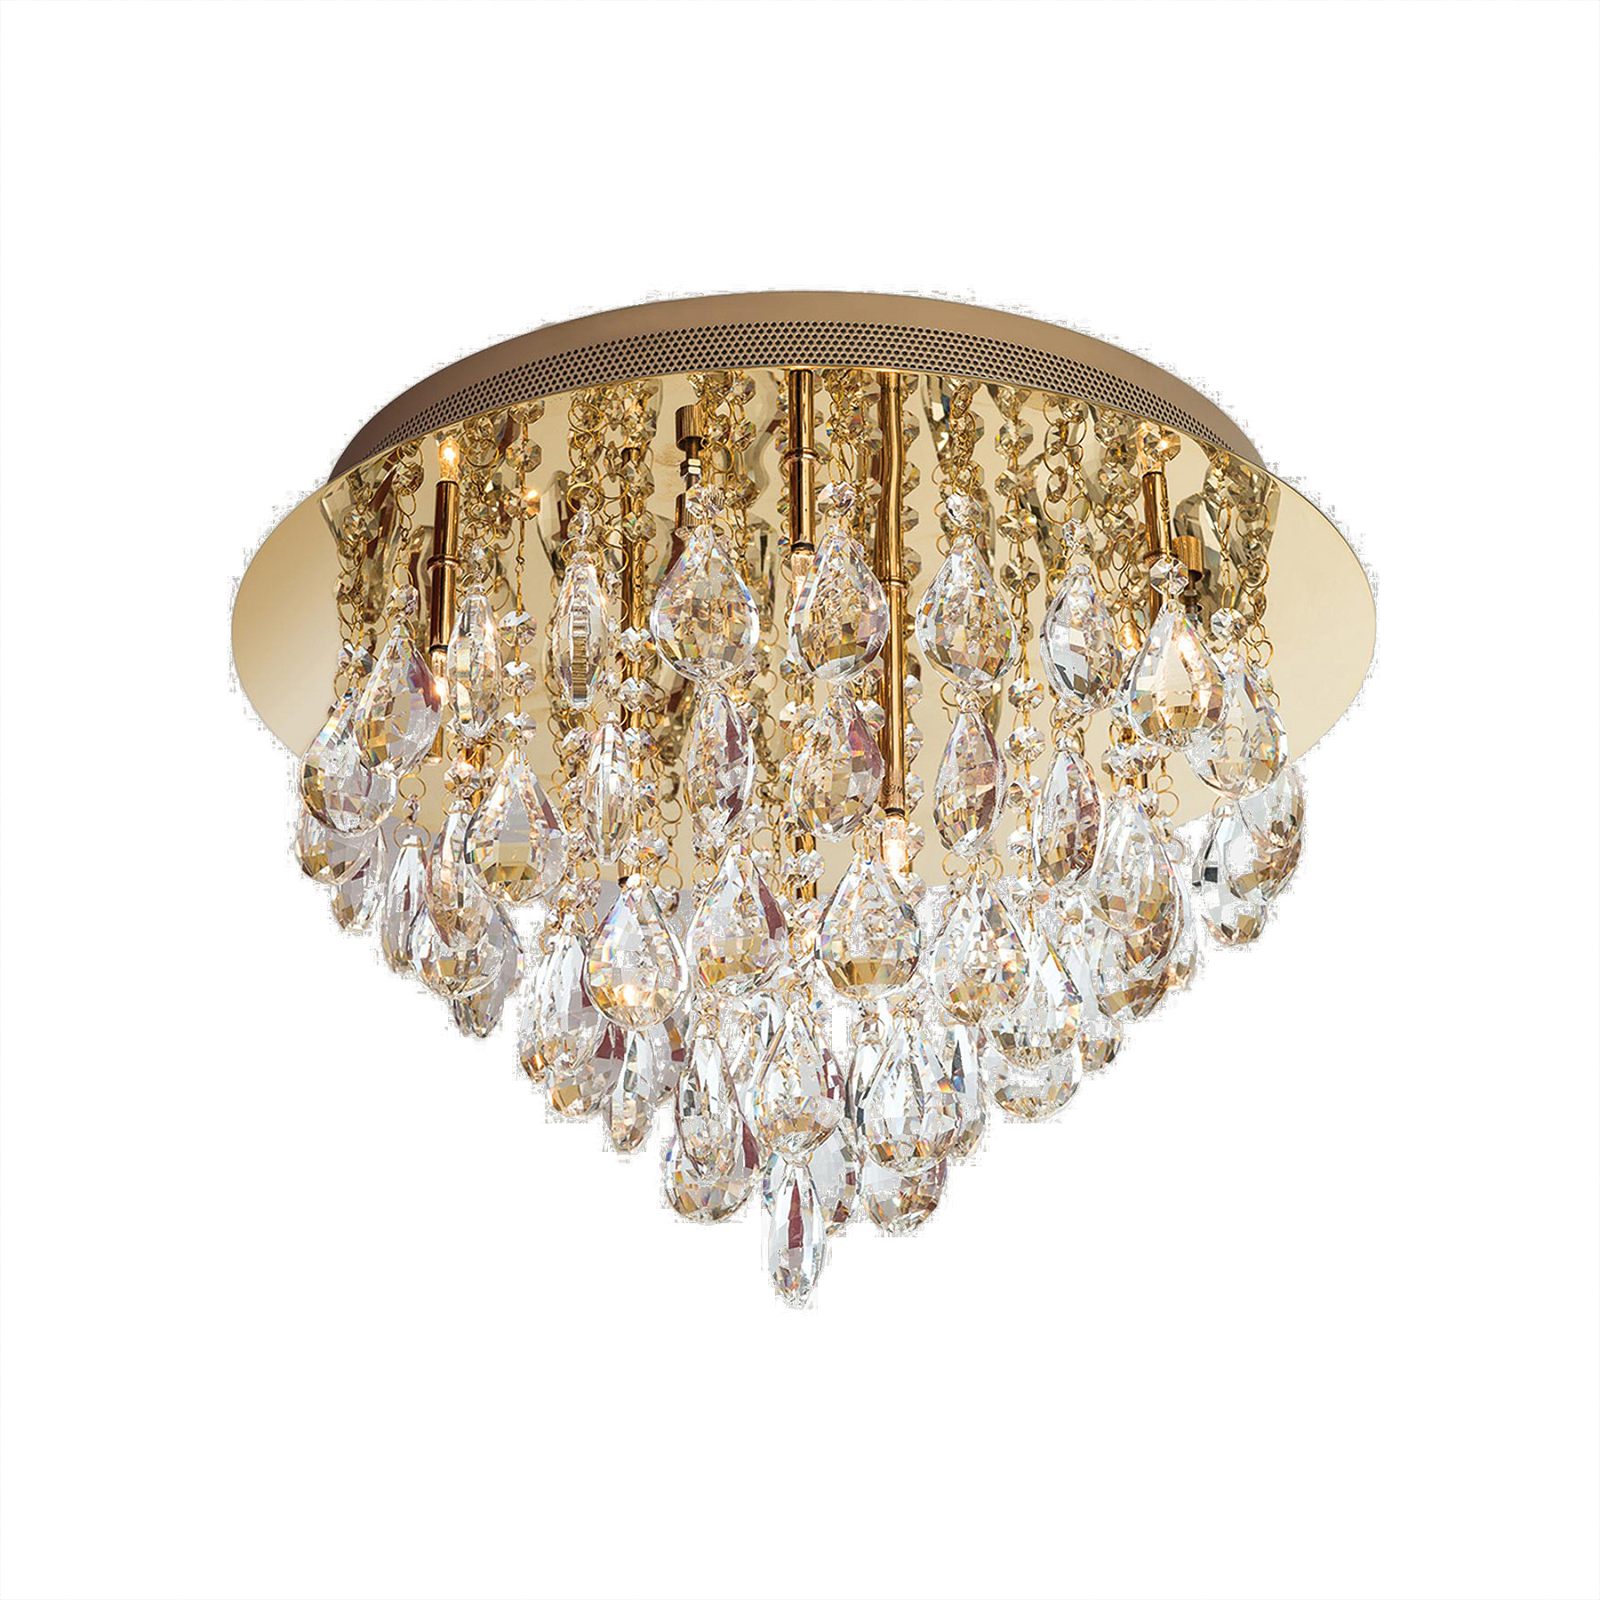 Celeste taklampe med K9-krystaller, Ø45cm, gull